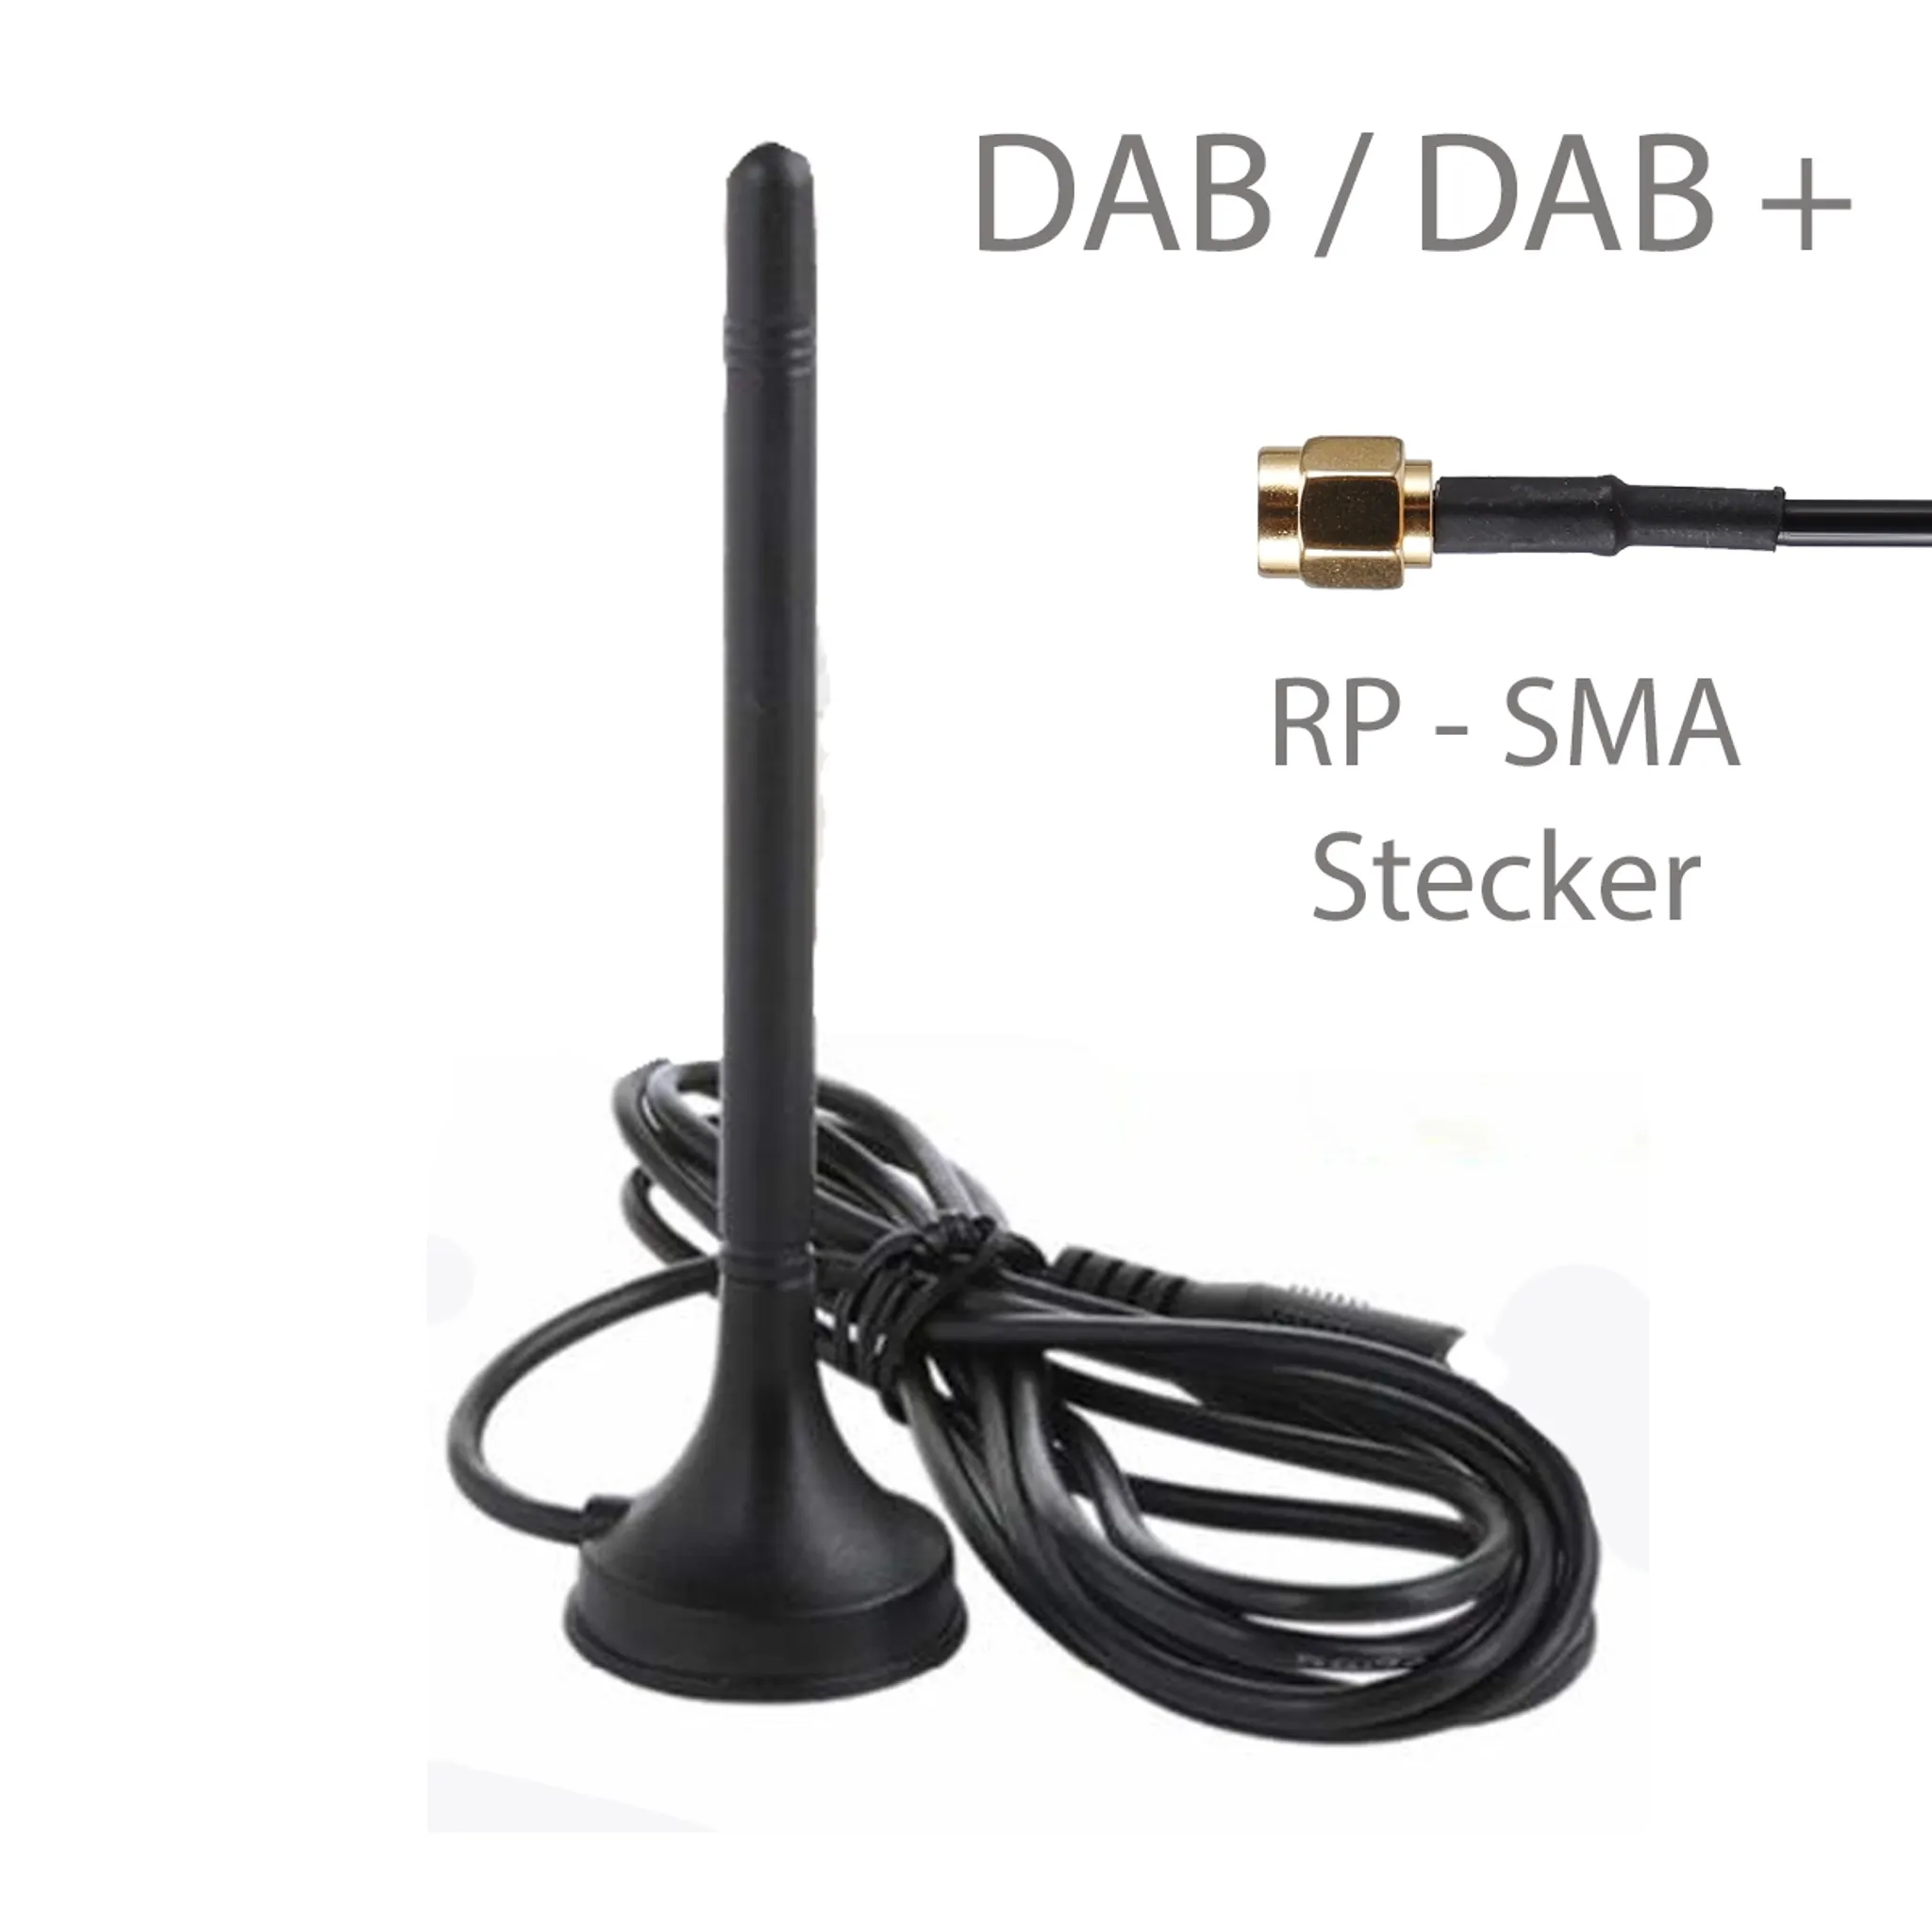 DAB Zimmerantenne / DAB+ Magnet Antenne für